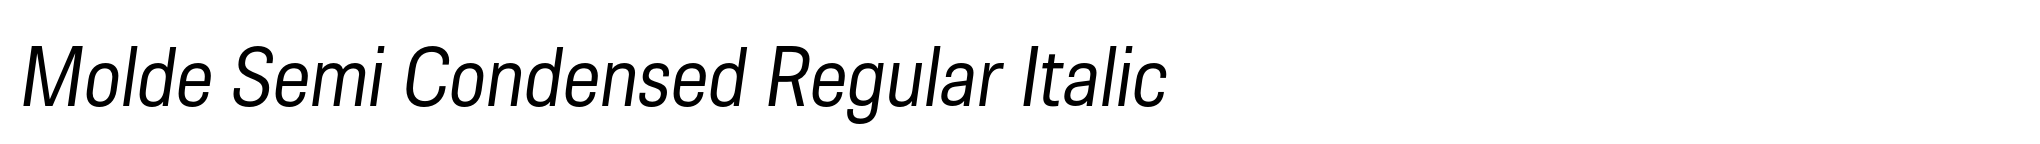 Molde Semi Condensed Regular Italic image